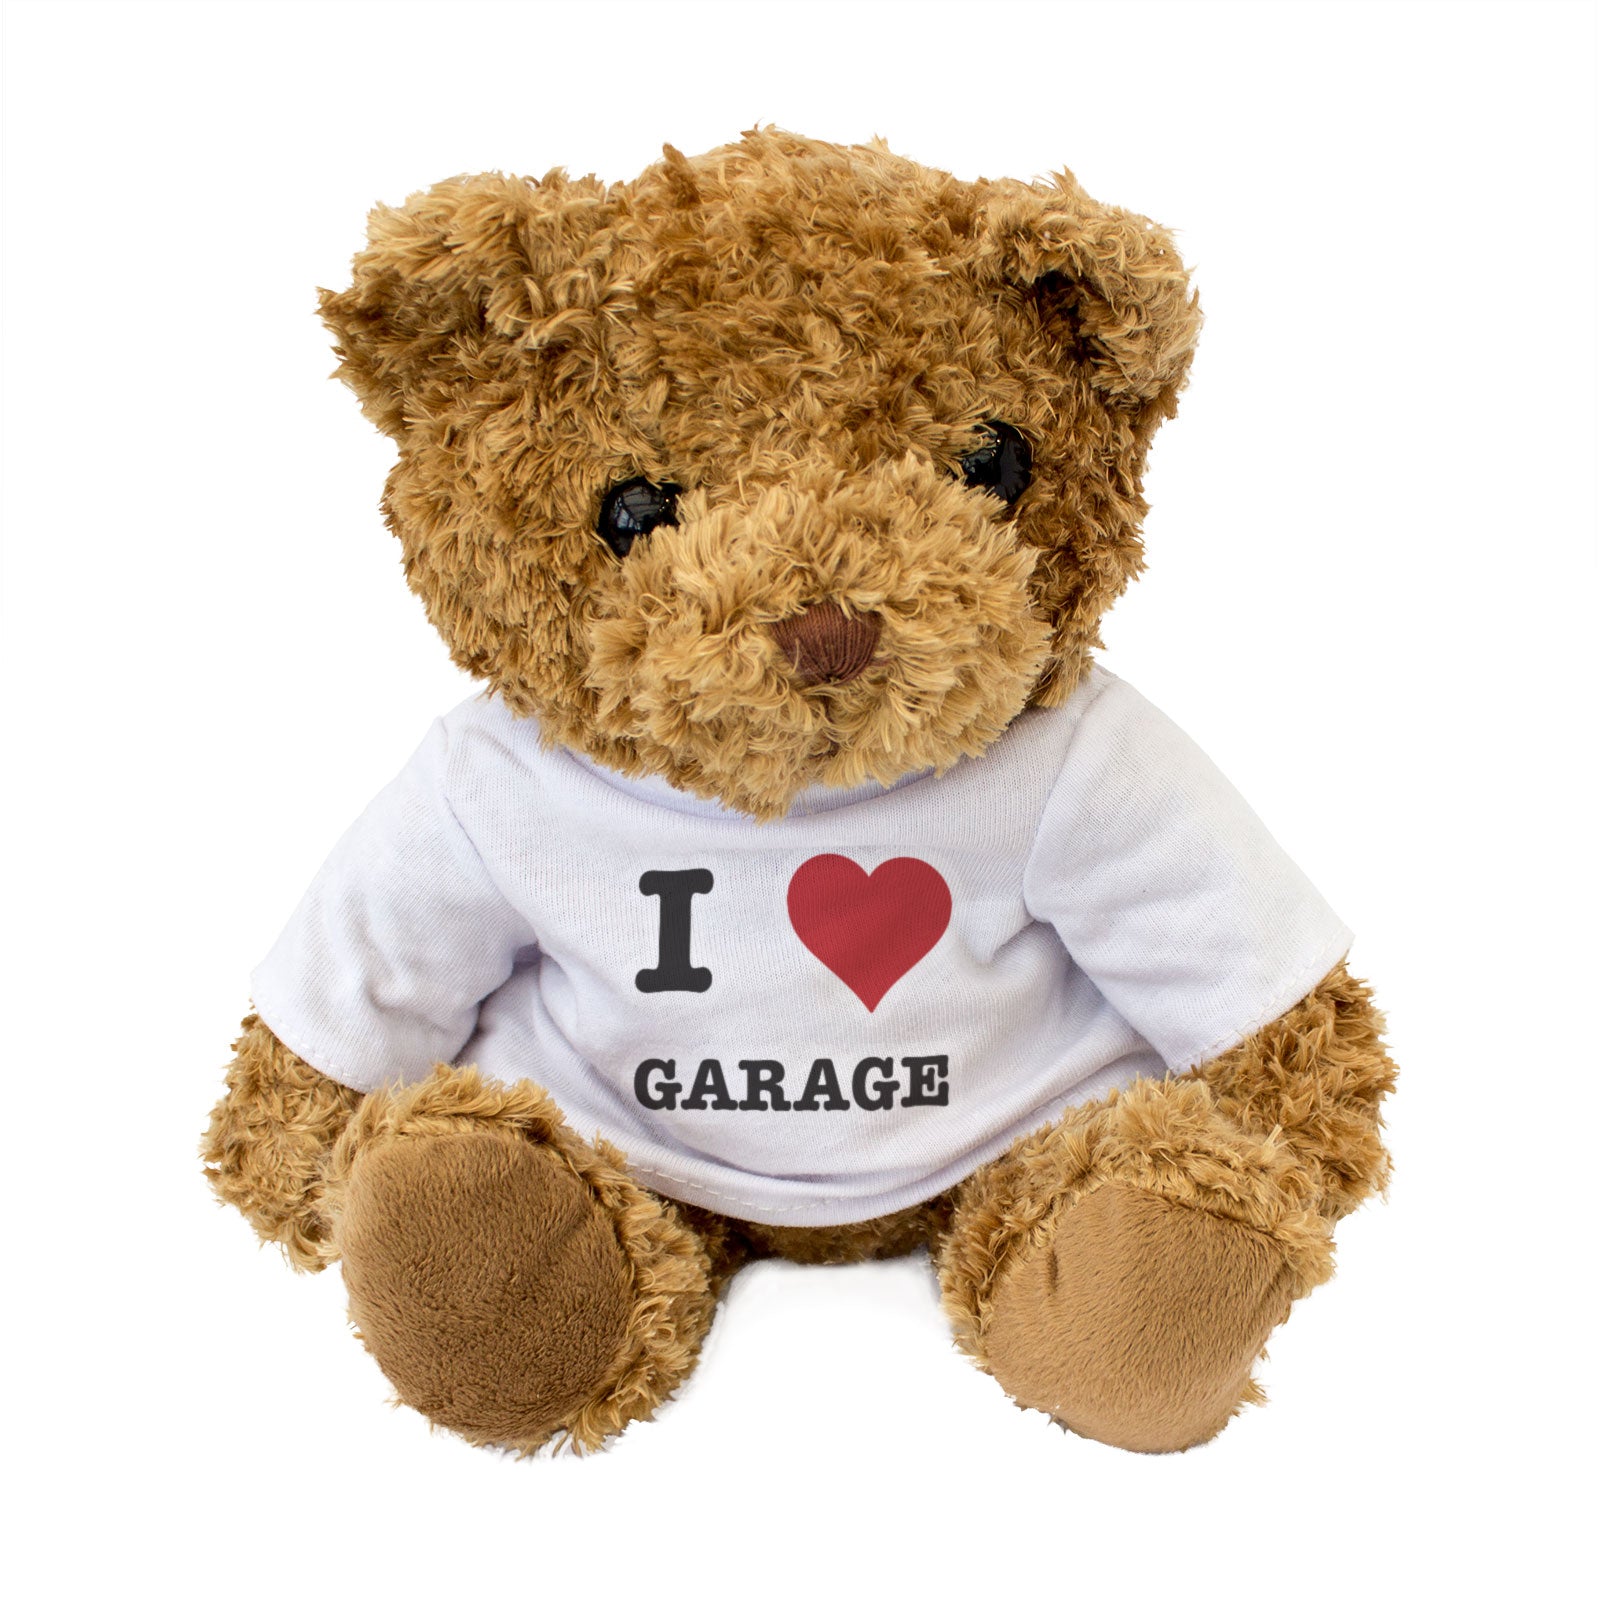 I Love Garage - Teddy Bear